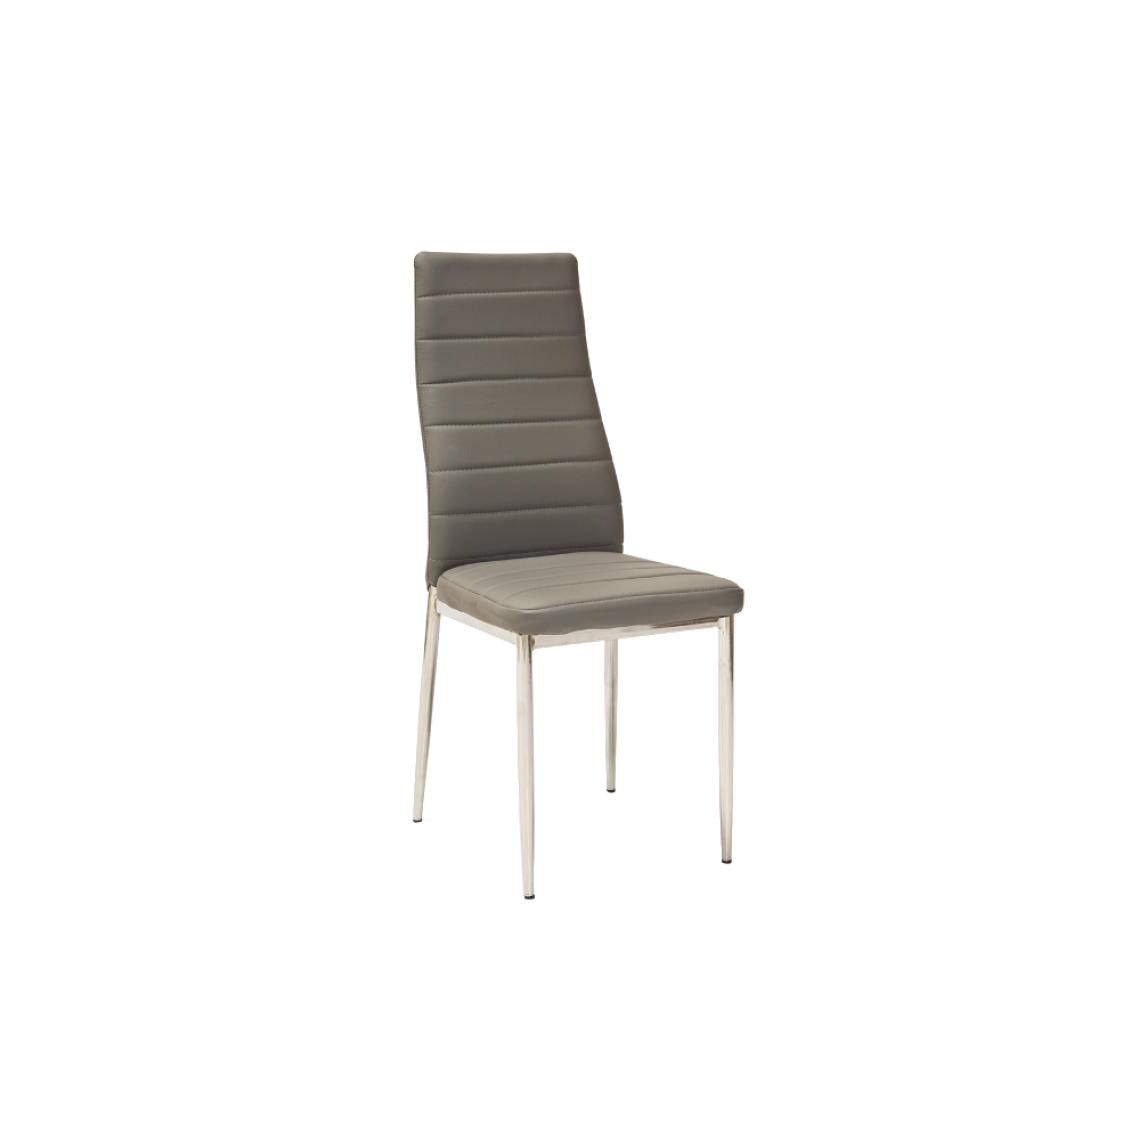 Ac-Deco - Chaise moderne - H261 - 40 x 38 x 96 cm - Cadre chromé - Gris - Chaises